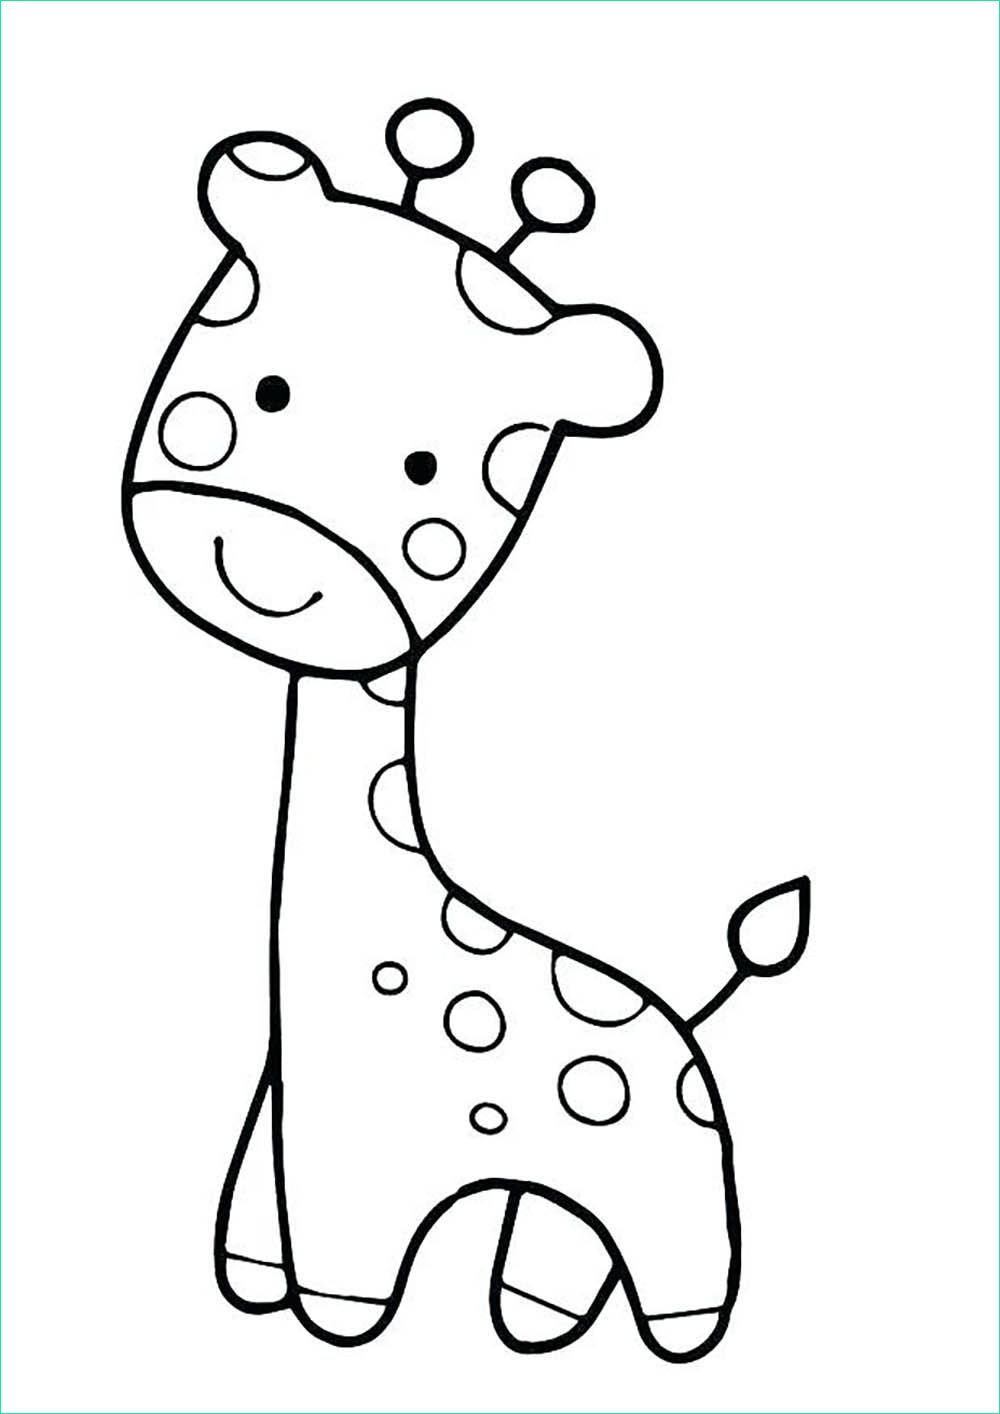 Dessin A Colorier Enfant Nouveau Galerie Petite Girafe Coloriage De Girafes Coloriages Pour Enfants